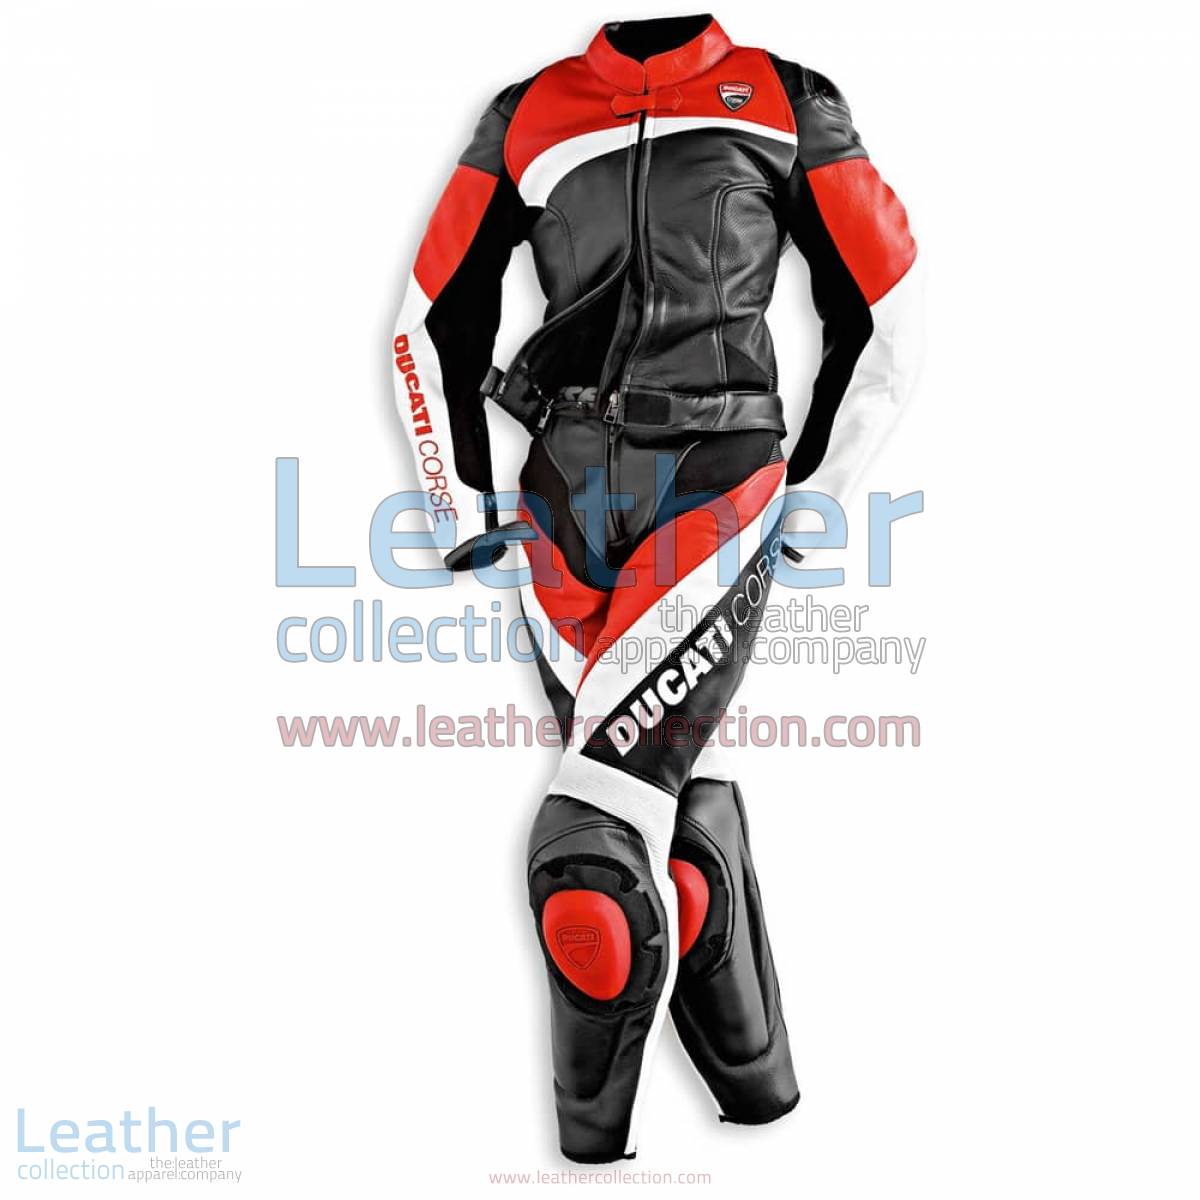 Ducati Corse Racing Leather Suit | racing suit,ducati corse